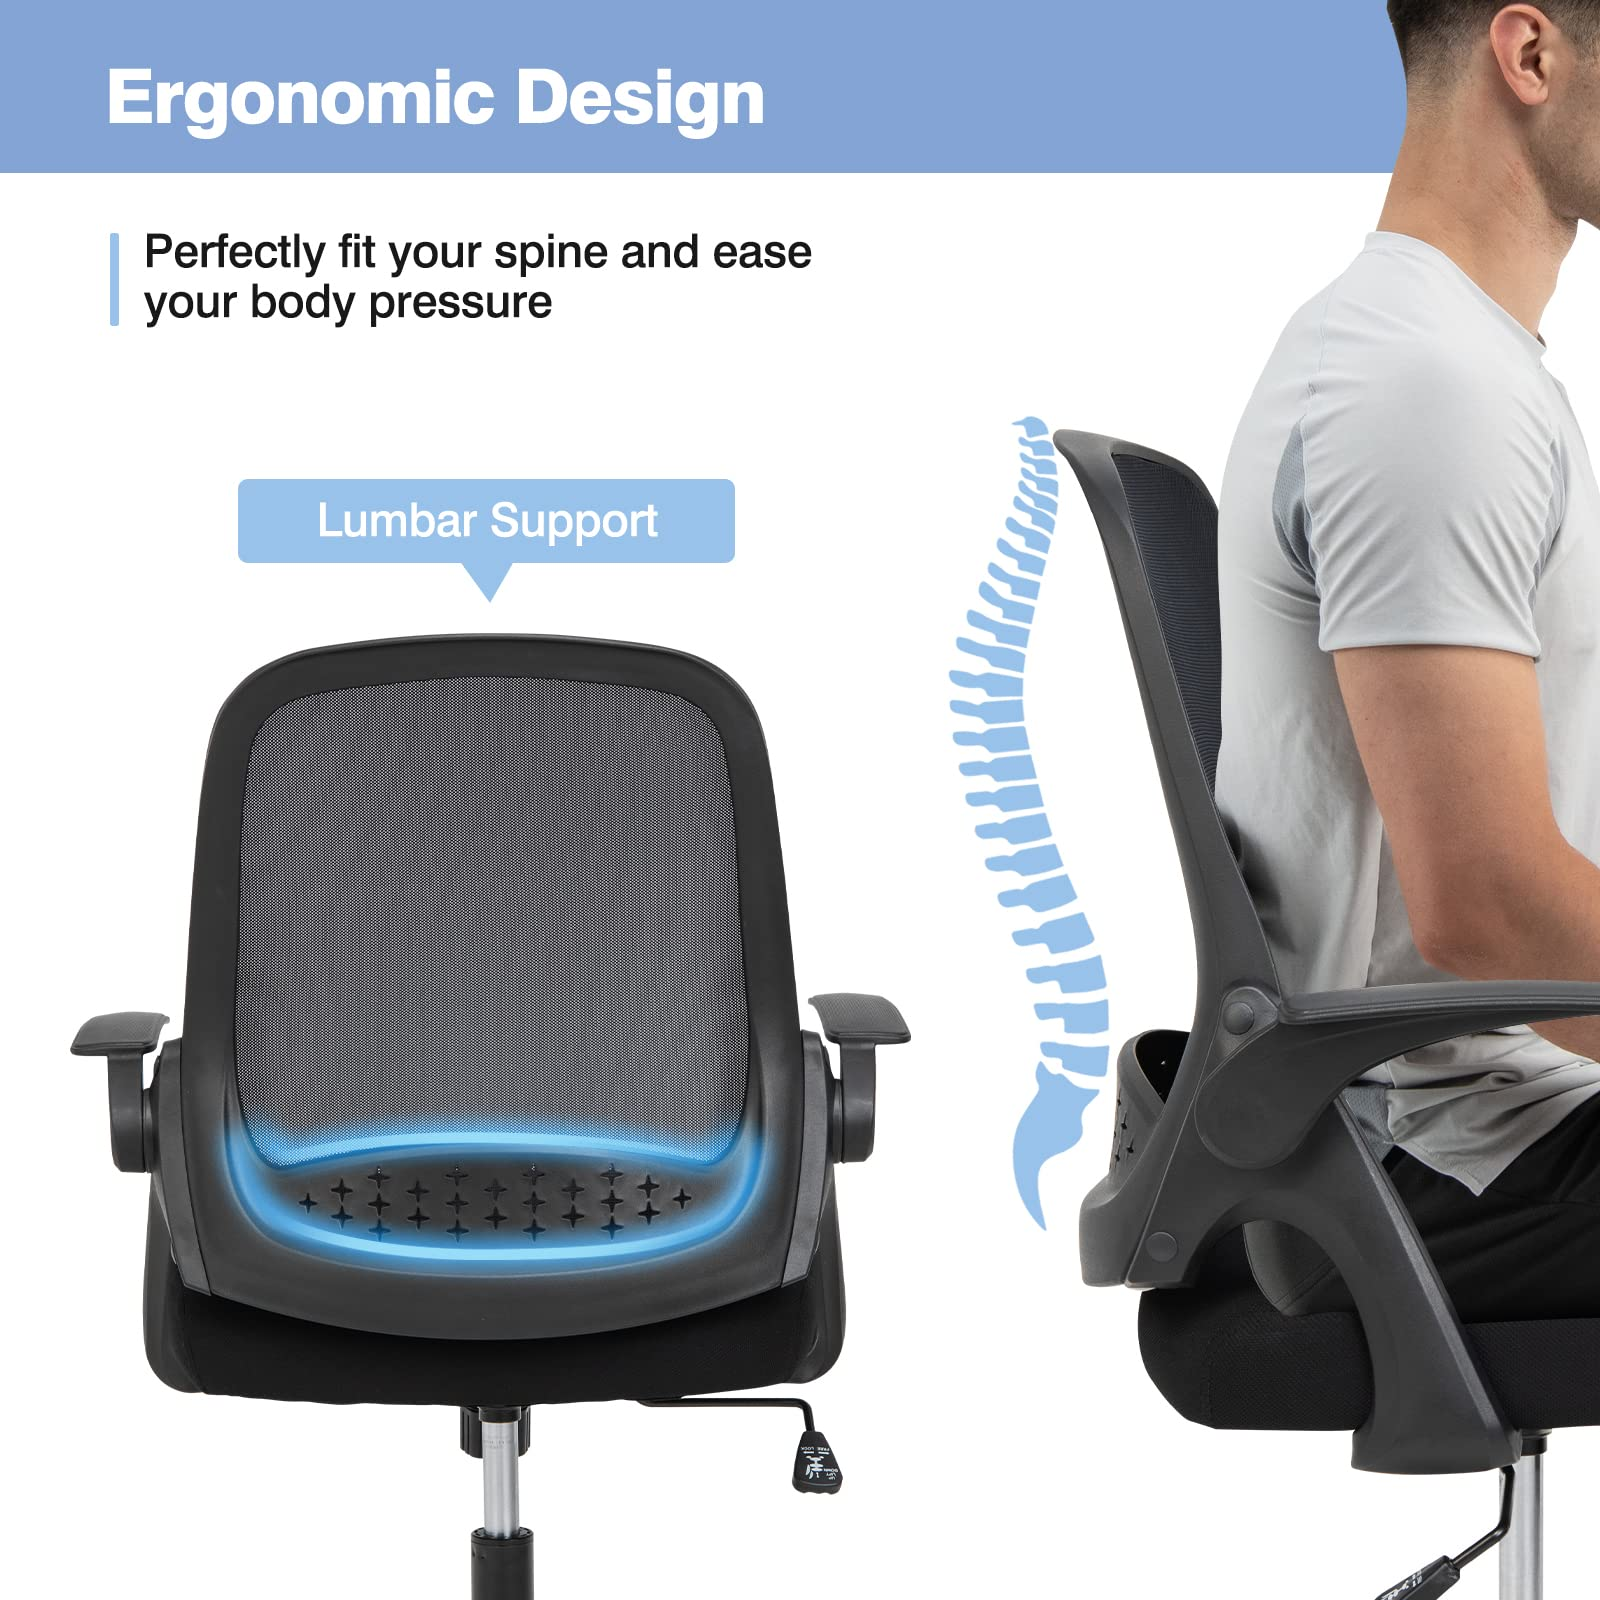 Giantex Office Chair, Ergonomic Desk Chair